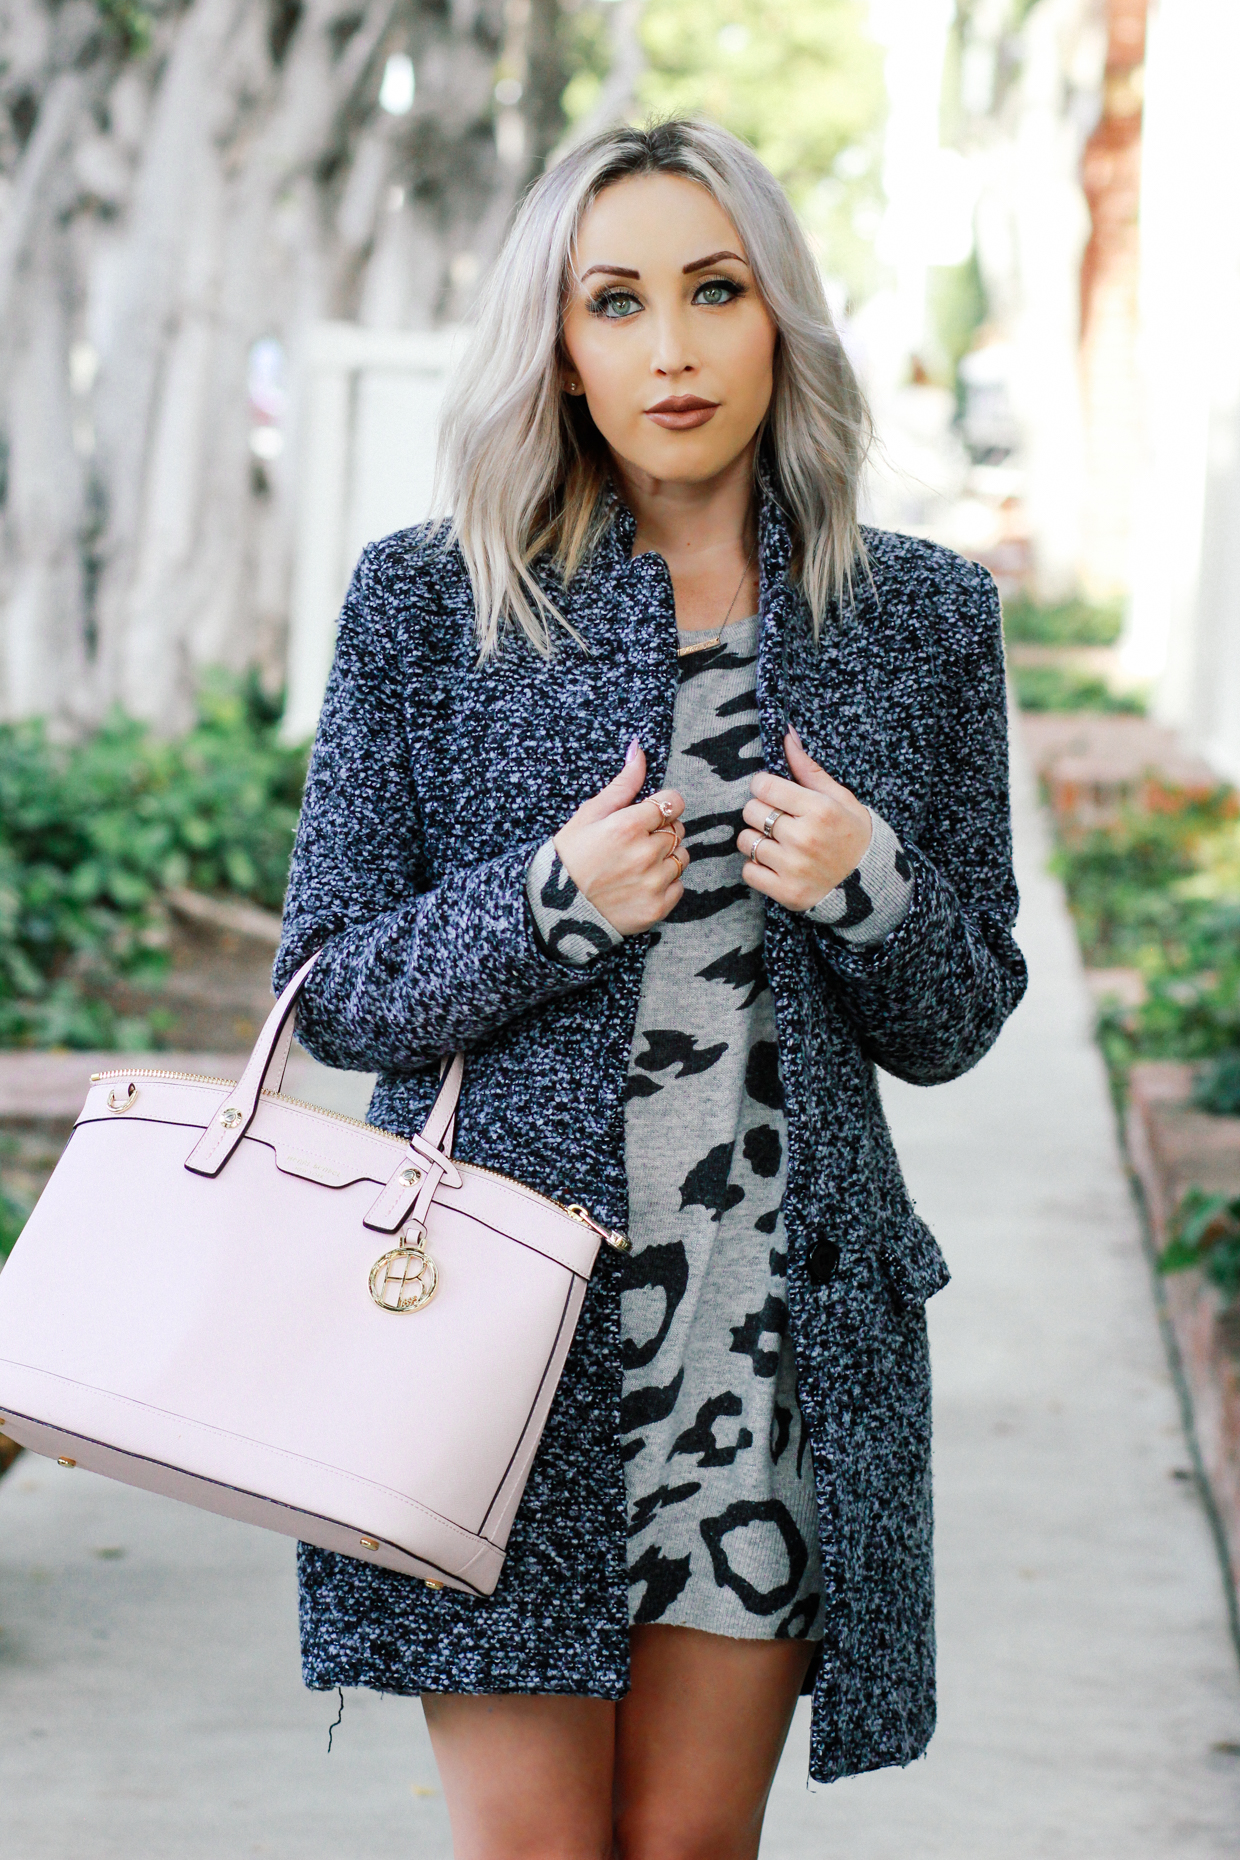 Blondie in the City | Grey Sweater Dress, Grey Coat, Pink @henribendel Bag